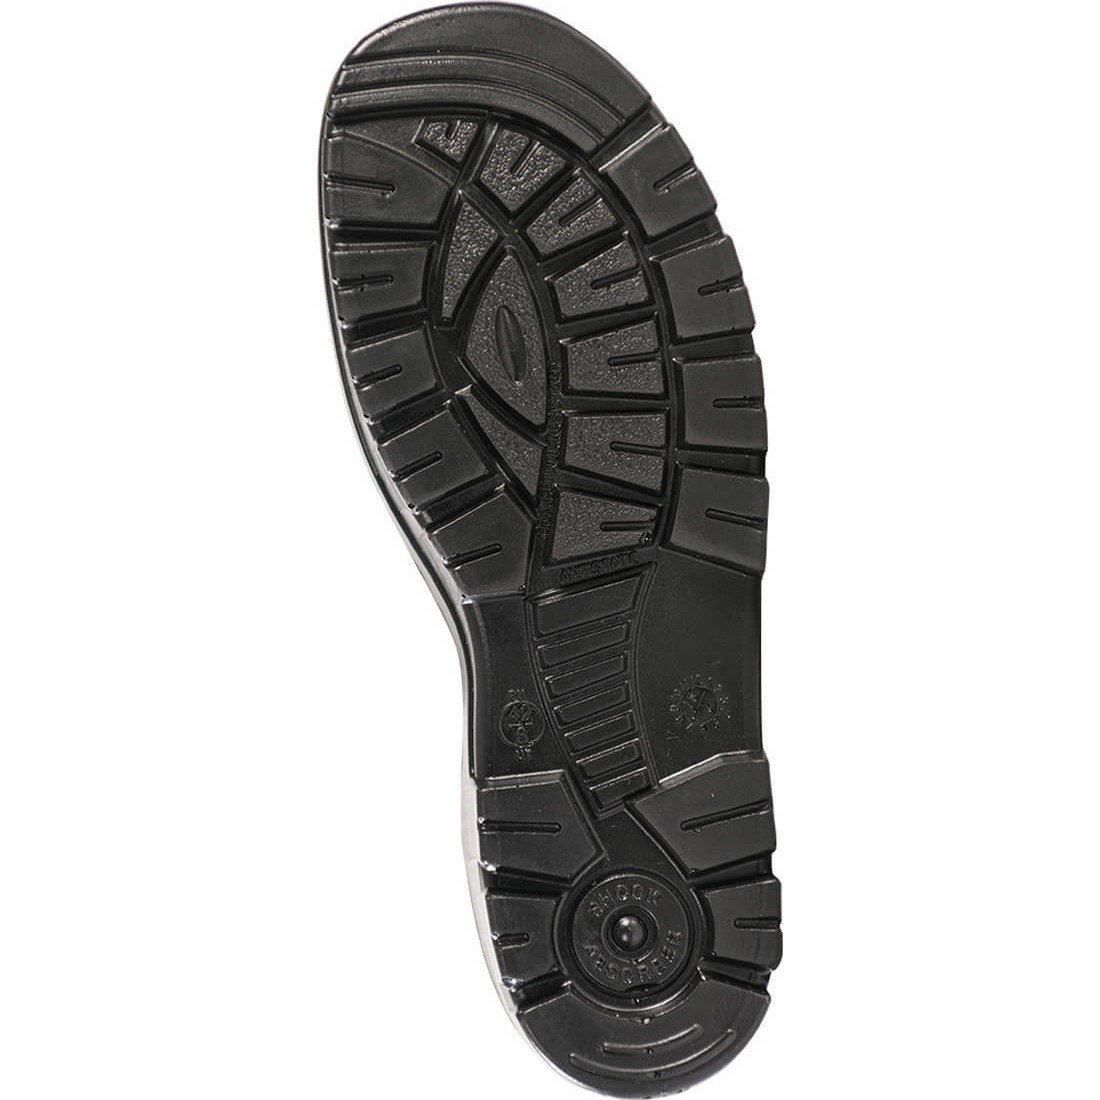 Cizma de Protectie din Poliuretan Steelite™  Wellington S5 CI FO - Incaltaminte de protectie | Bocanci, Pantofi, Sandale, Cizme